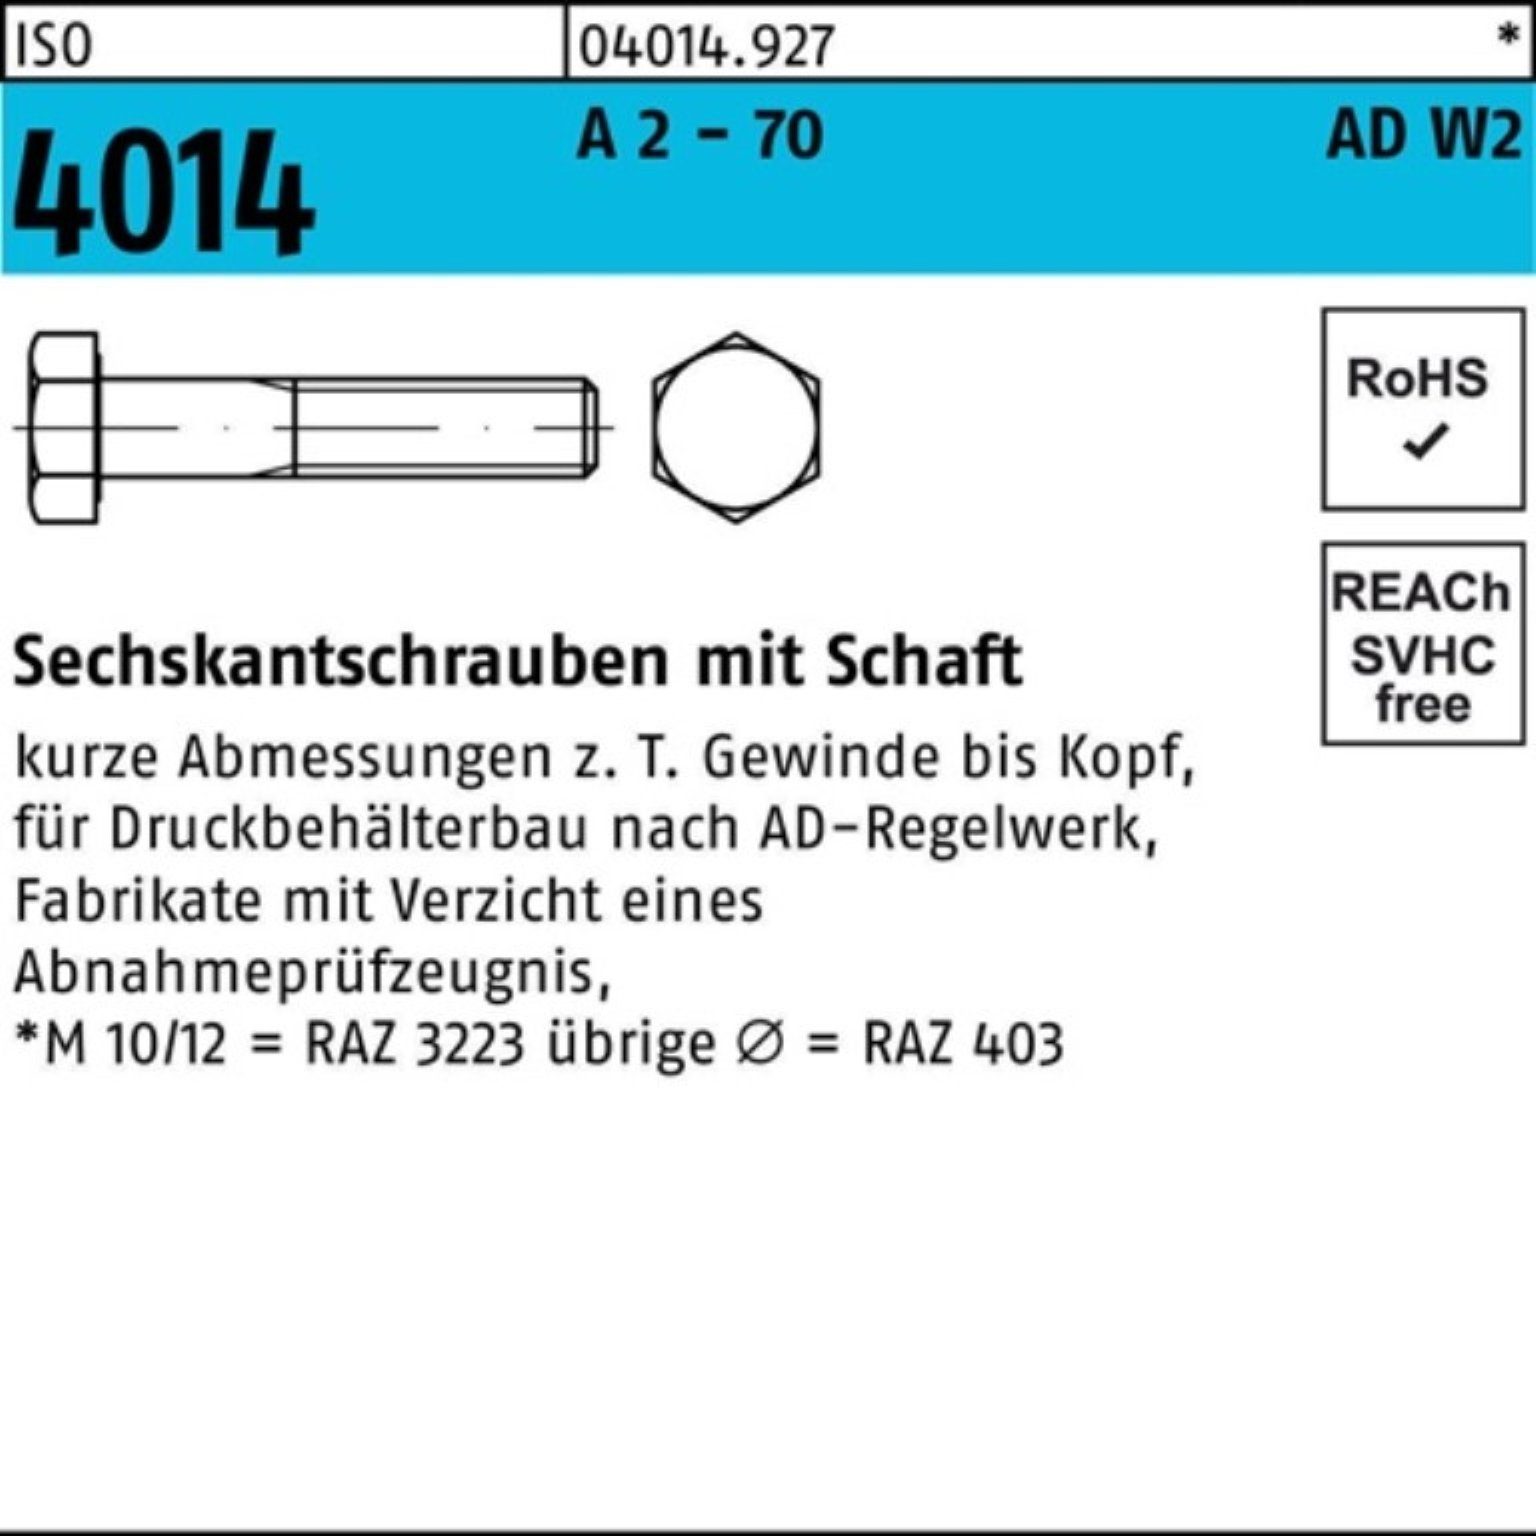 Pack Sechskantschraube 4014 70 170 2 - M16x Sechskantschraube 100er AD-W2 Bufab Schaft 1 A ISO